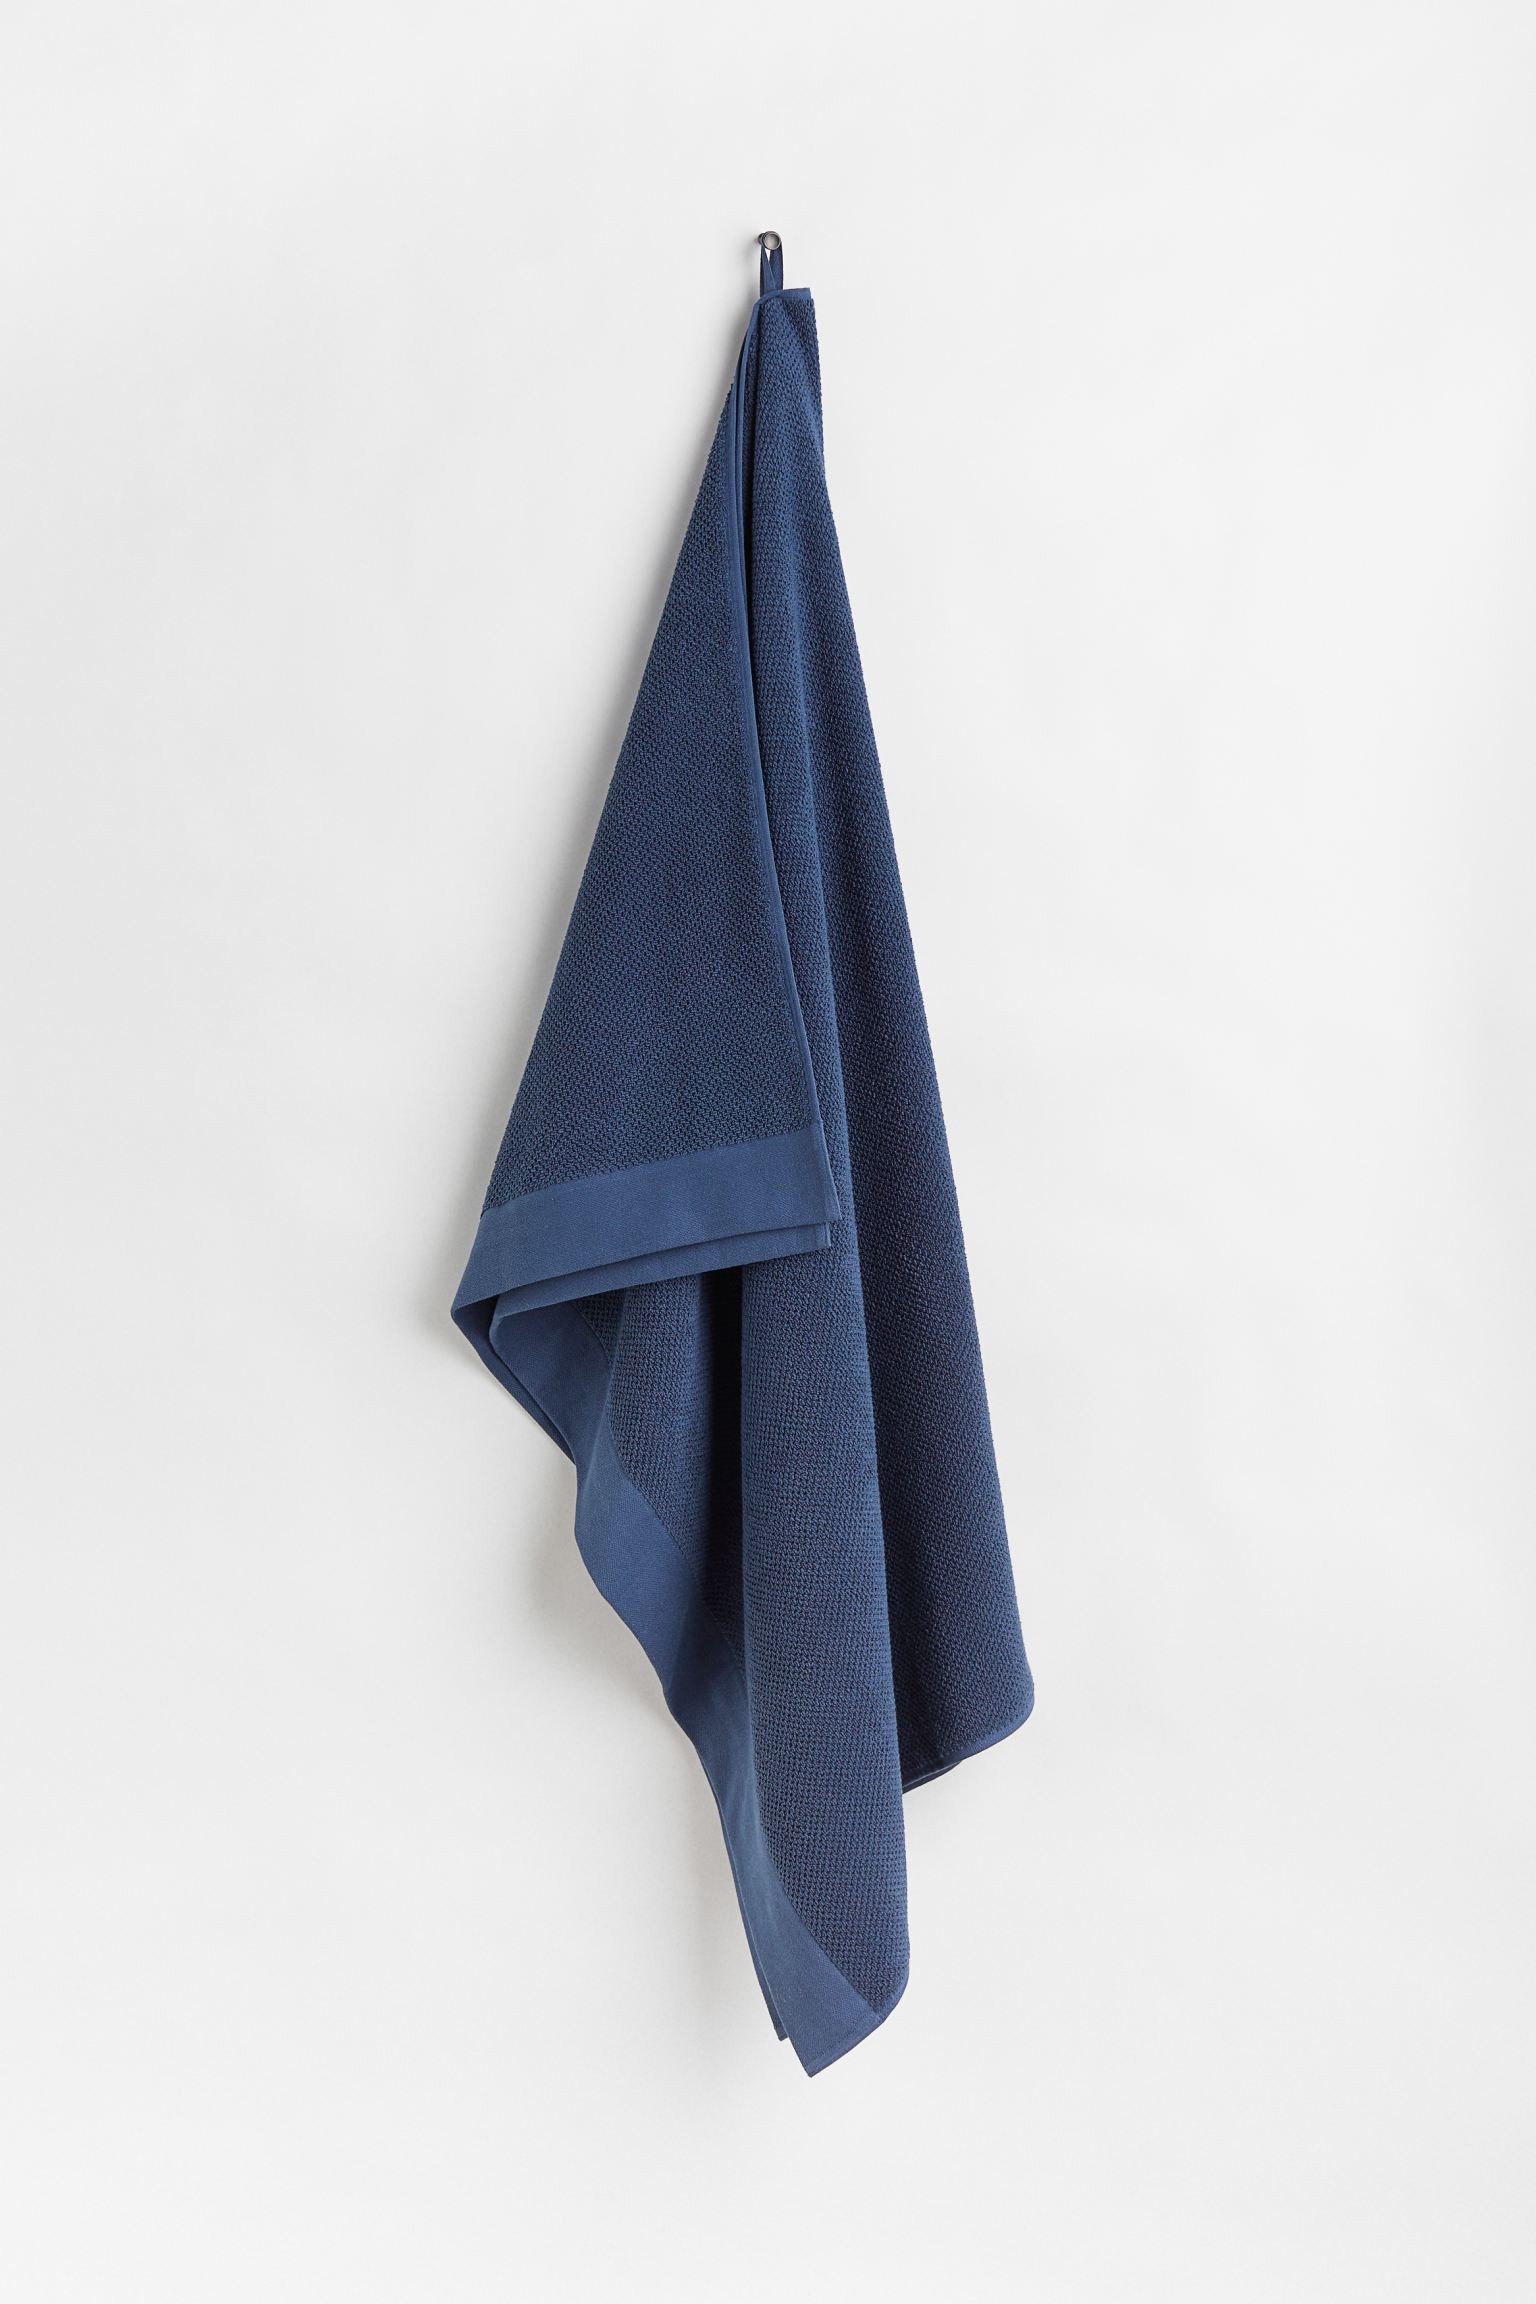 H&M Home Большое банное полотенце из хлопковой махры, Темно-синий, 100x150 1097301011 | 1097301011